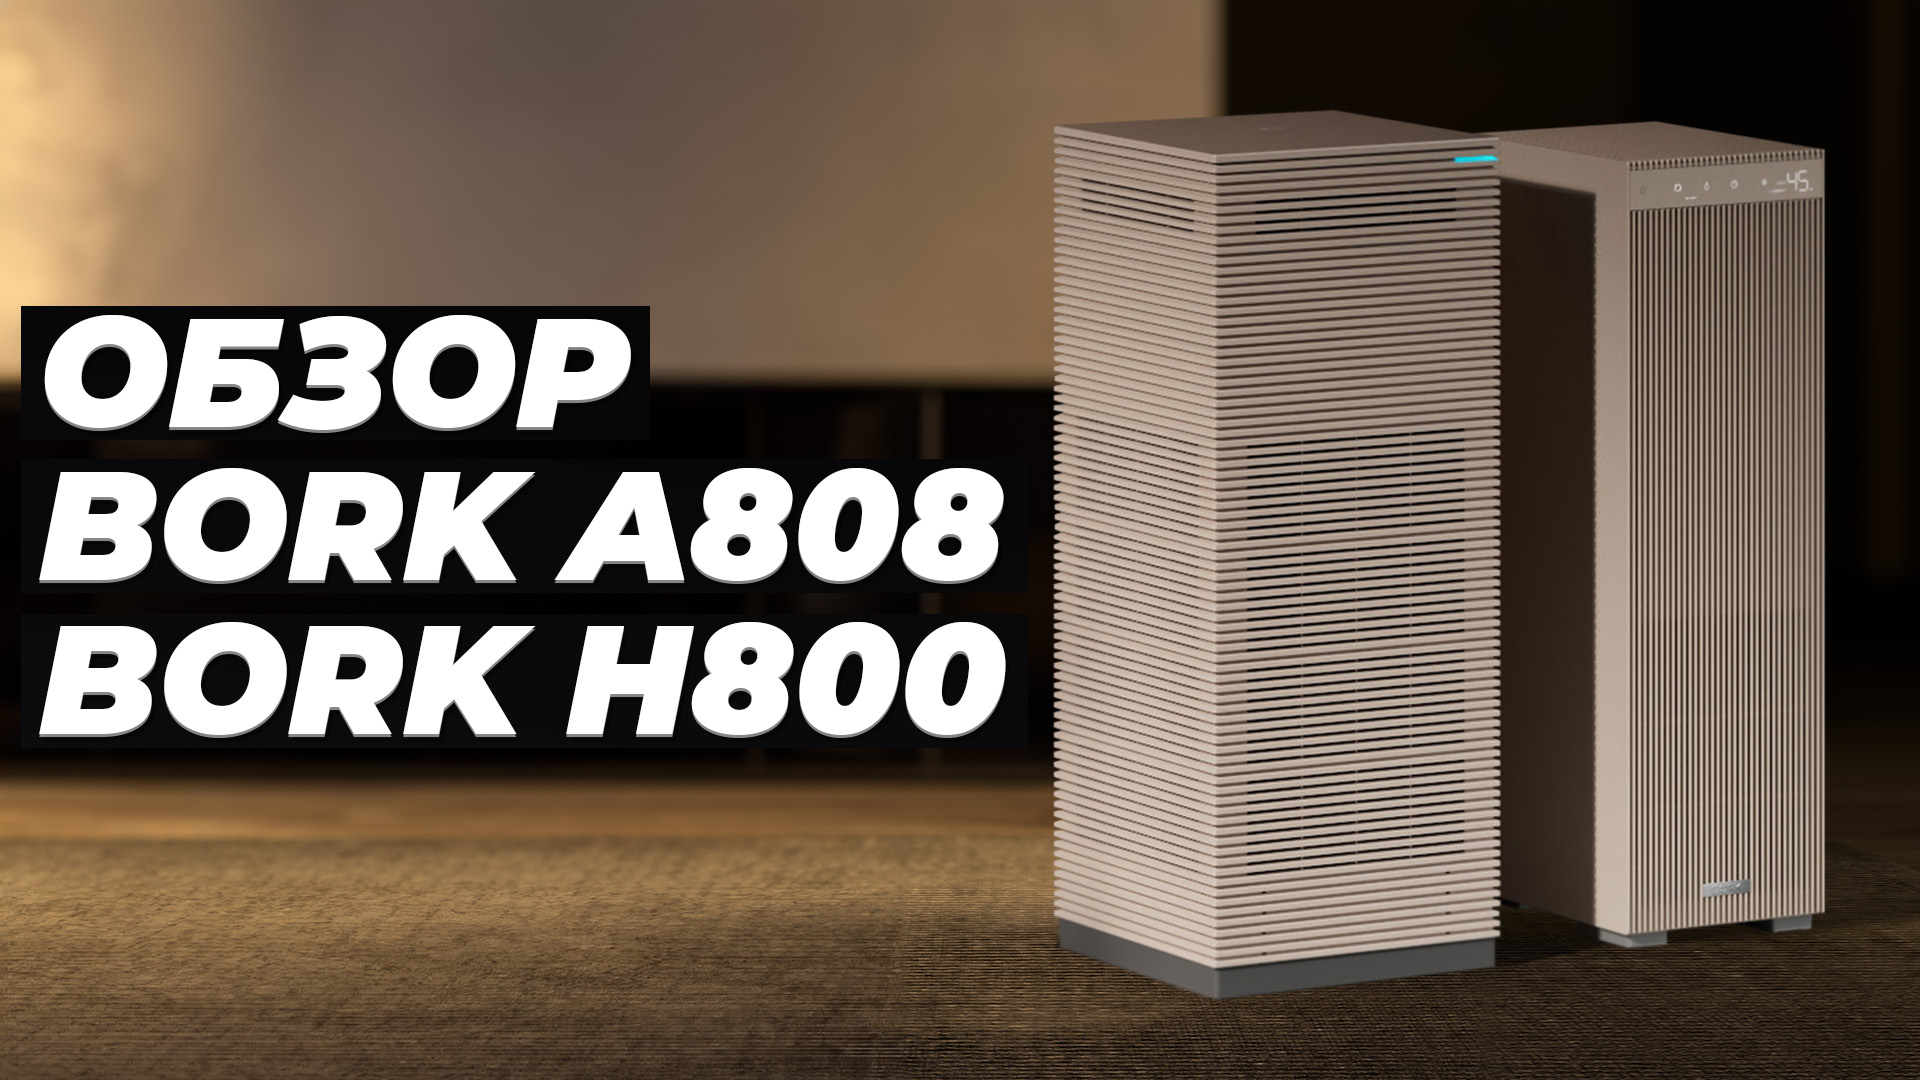 Bork A808 и Bork H800: Обзор и тесты очистителя и увлажнителя воздуха 💨 Насколько они хороши?